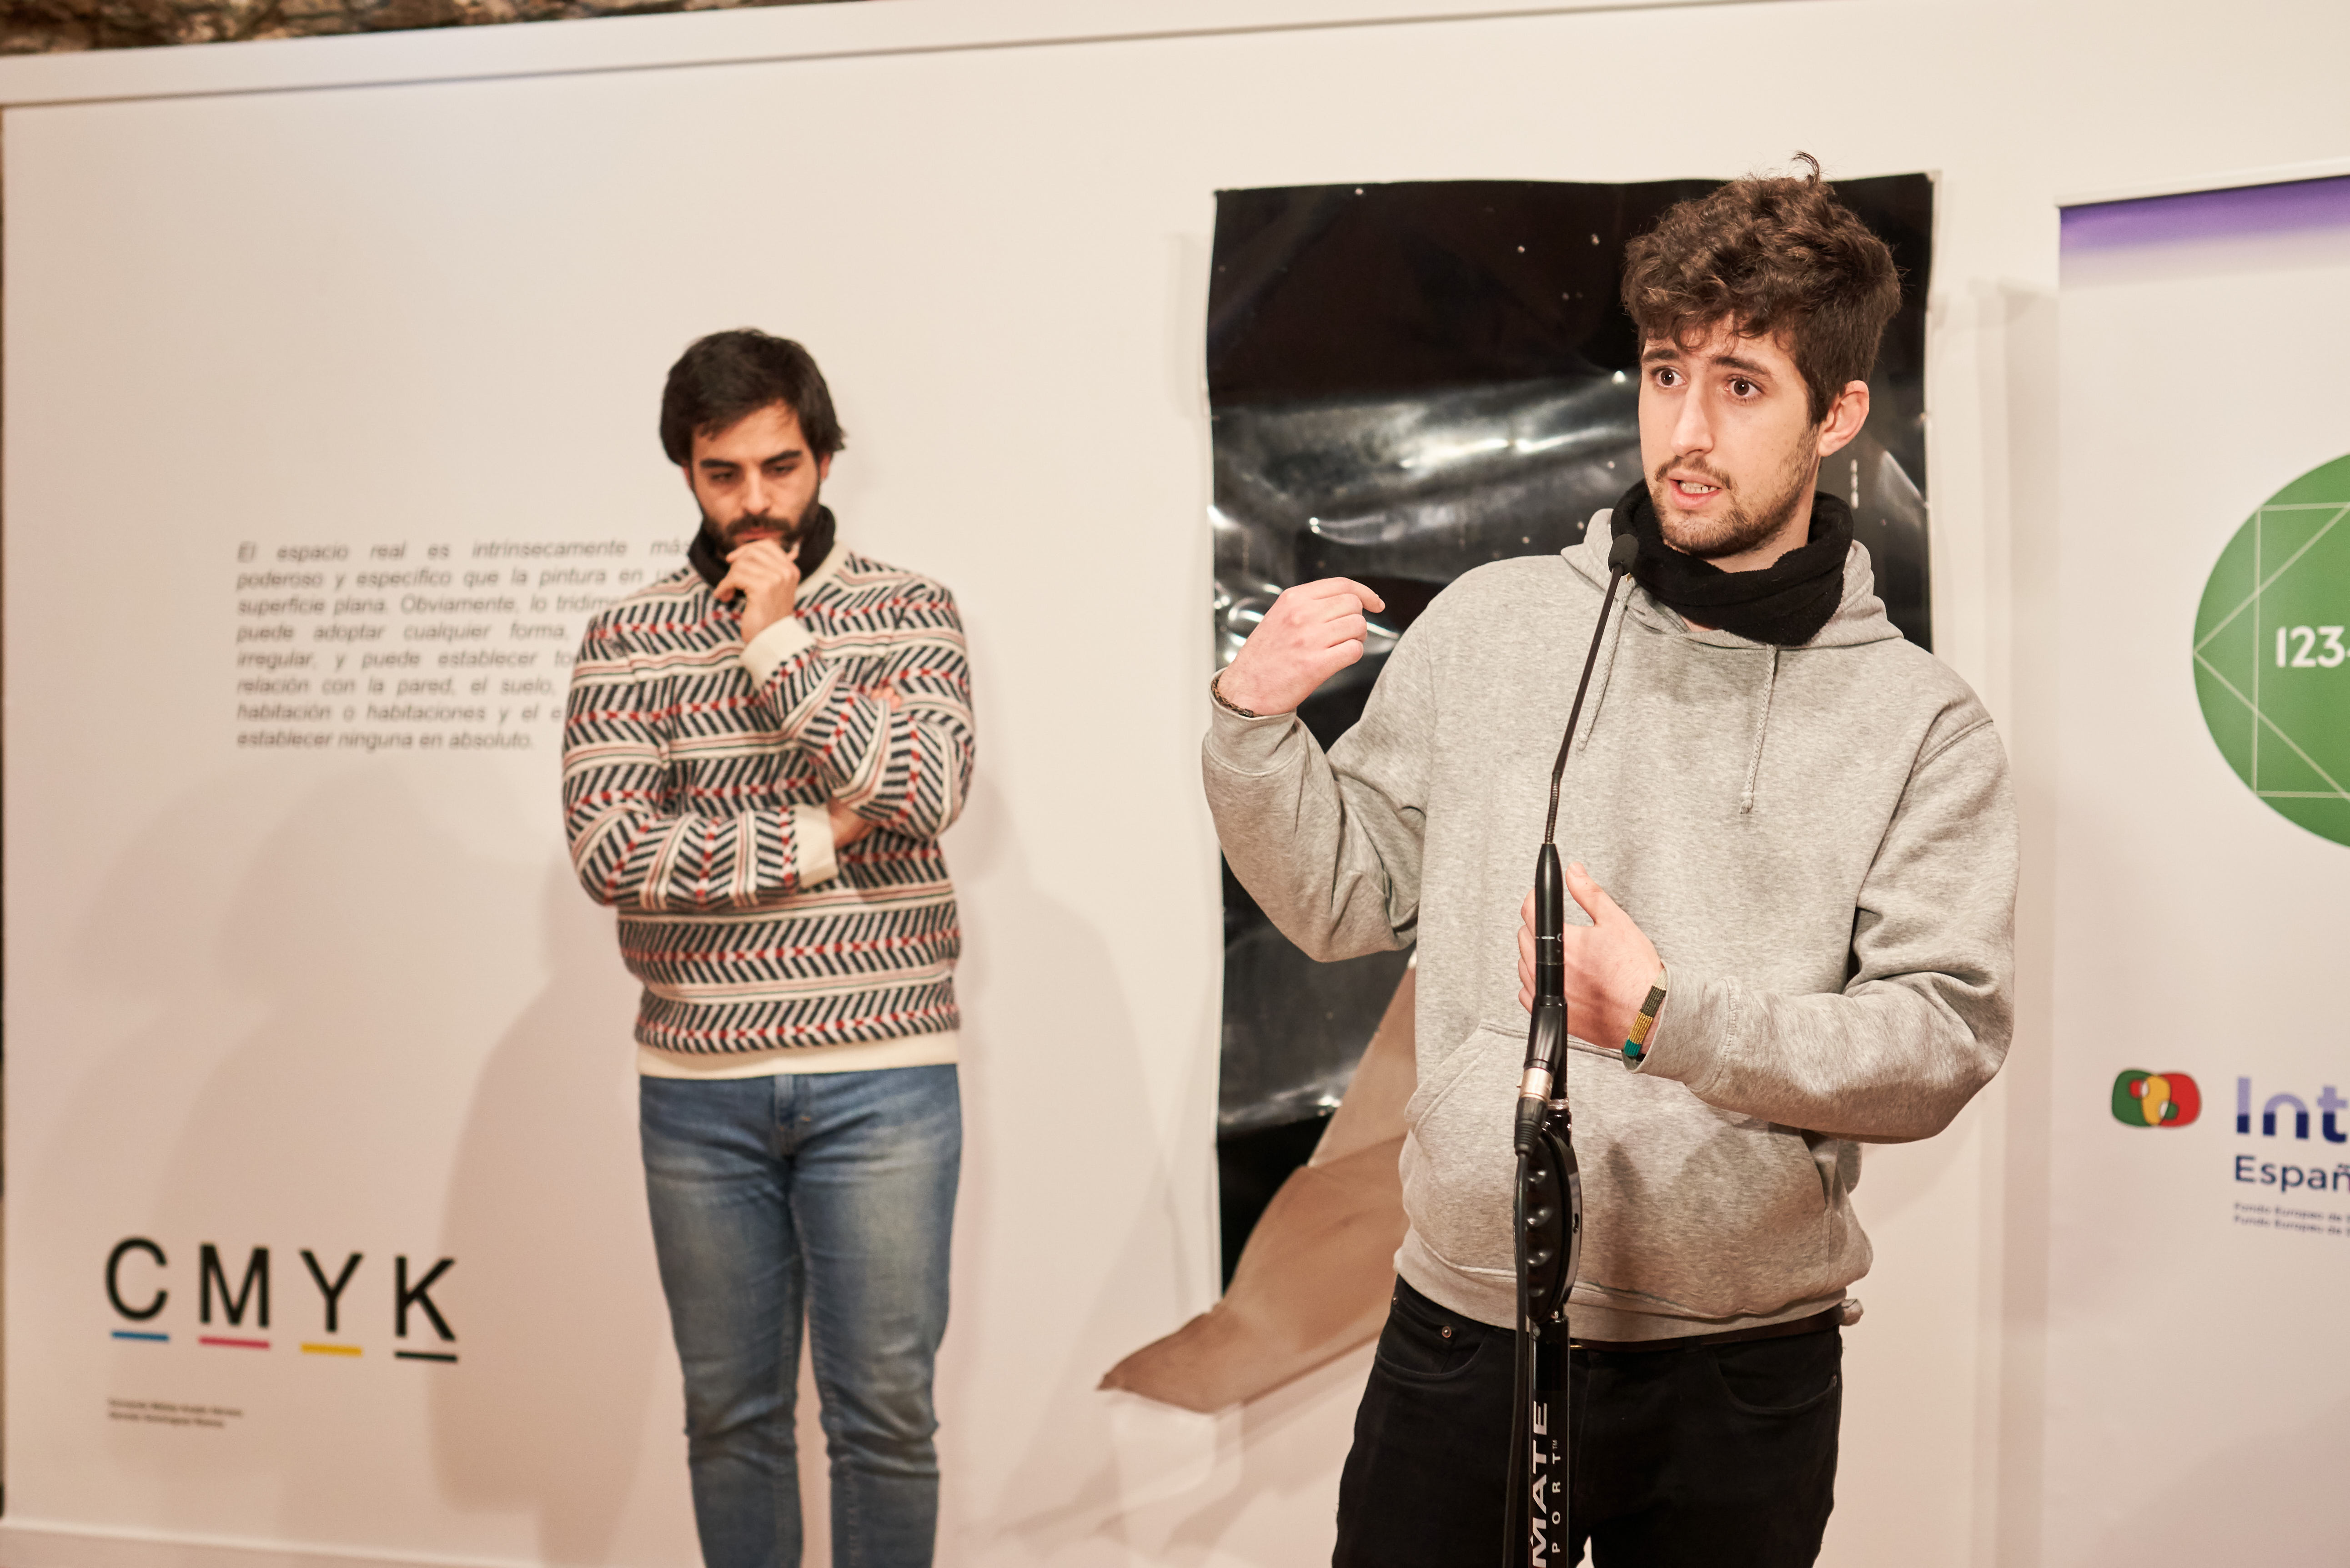  La Universidad de Salamanca inaugura la exposición ‘CMYK’ en el Espacio Experimental de Fonseca